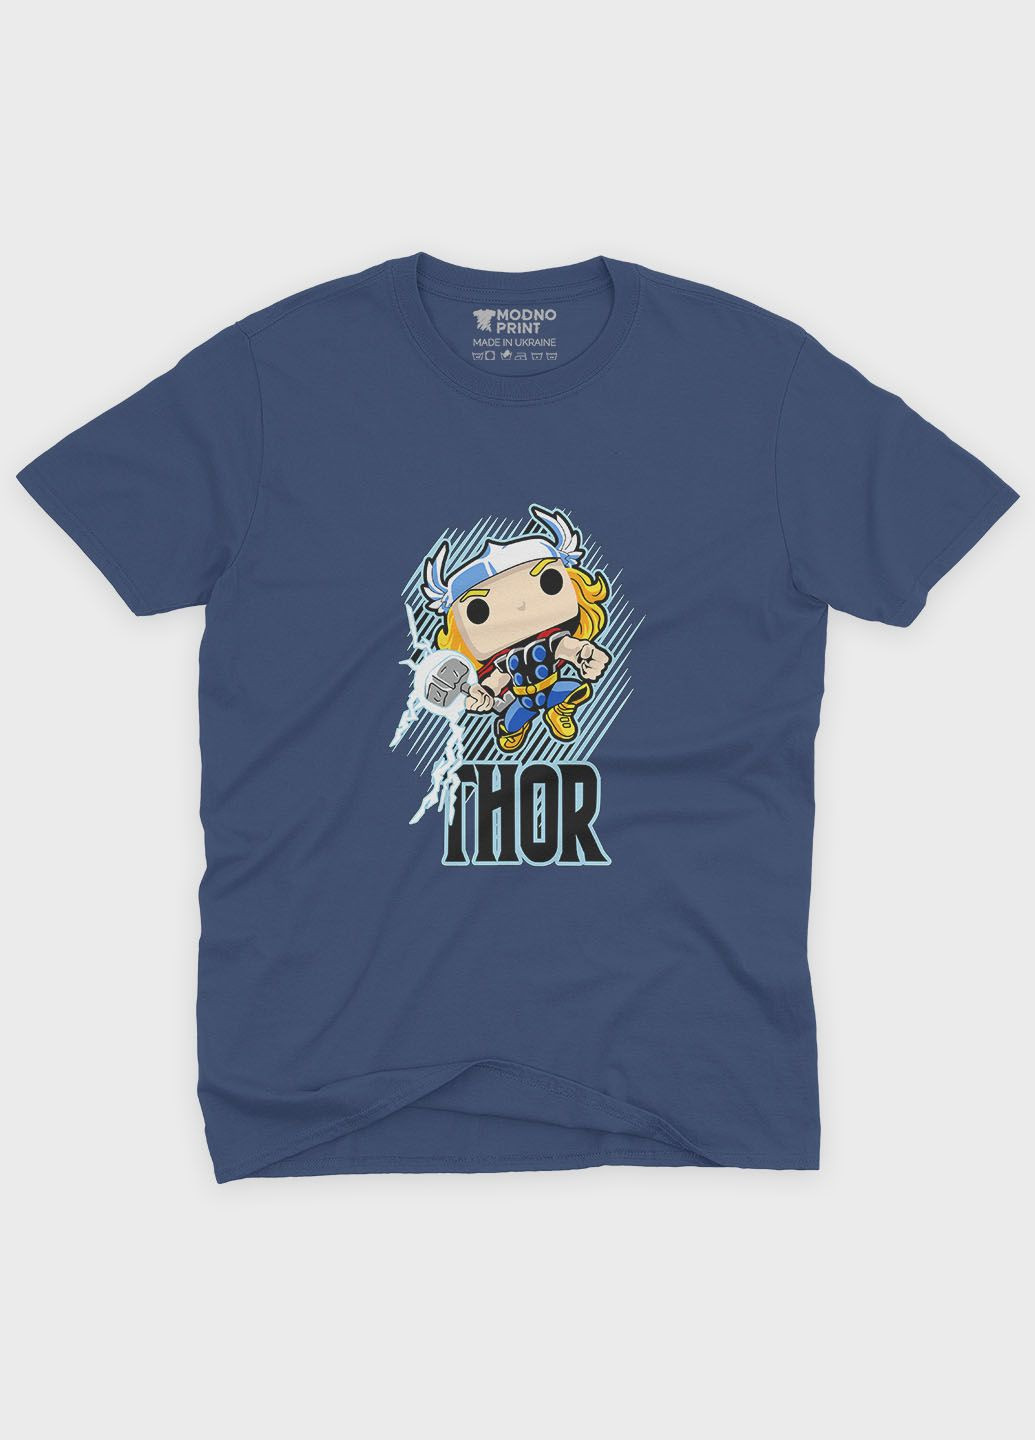 Темно-синяя демисезонная футболка для девочки с принтом супергероя - тор (ts001-1-nav-006-024-003-g) Modno